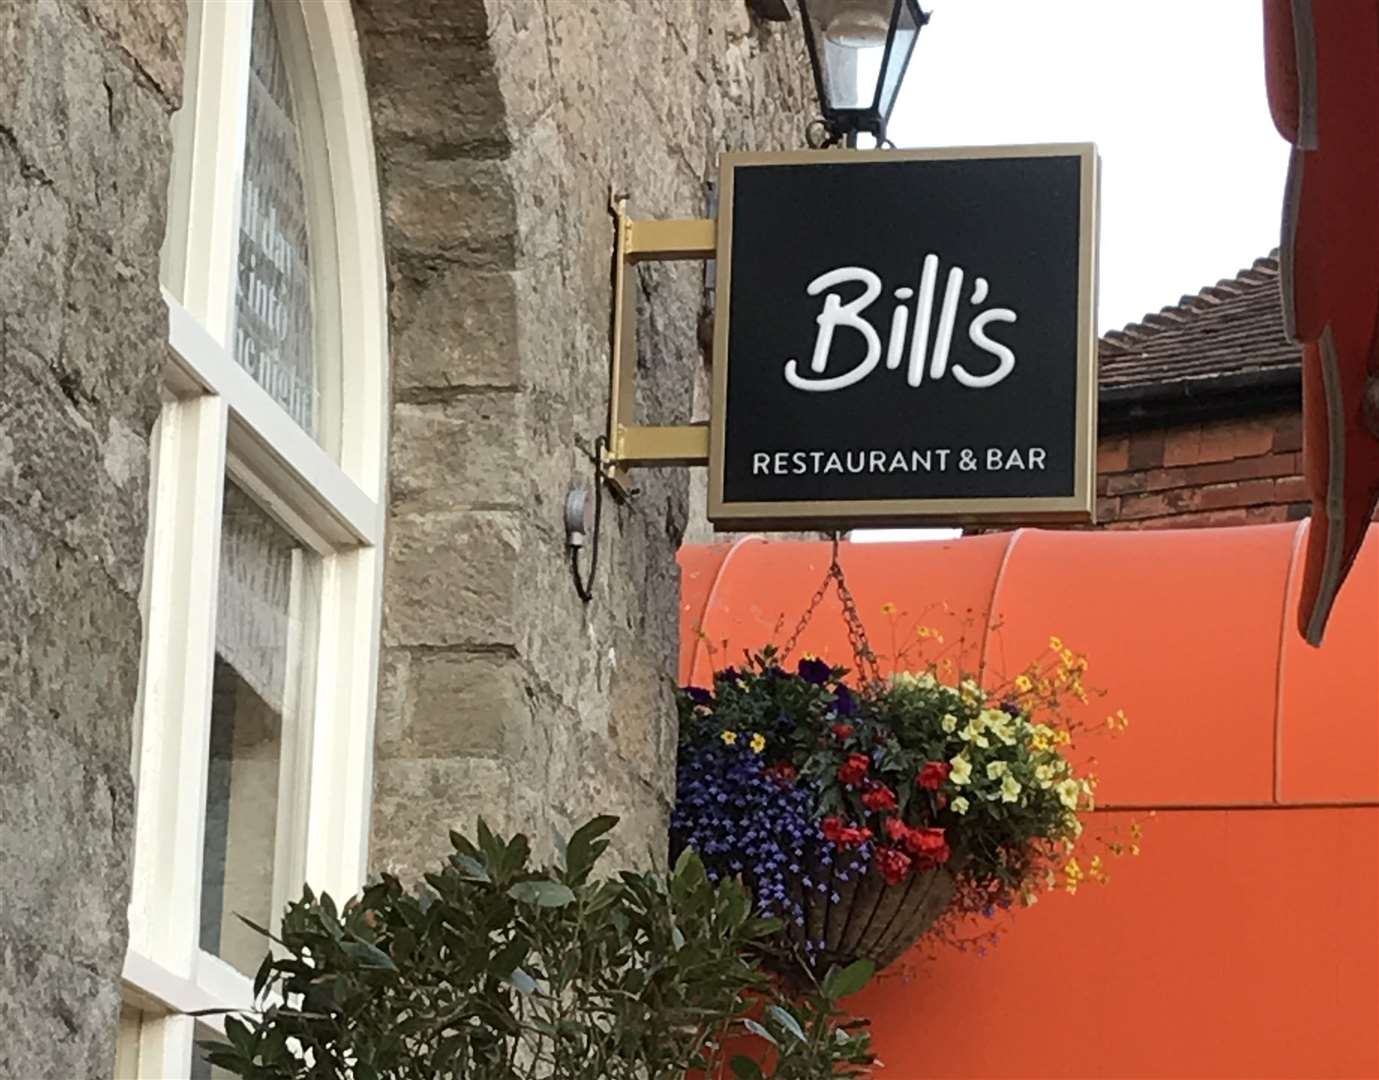 Bill's in London Road, Sevenoaks is now open